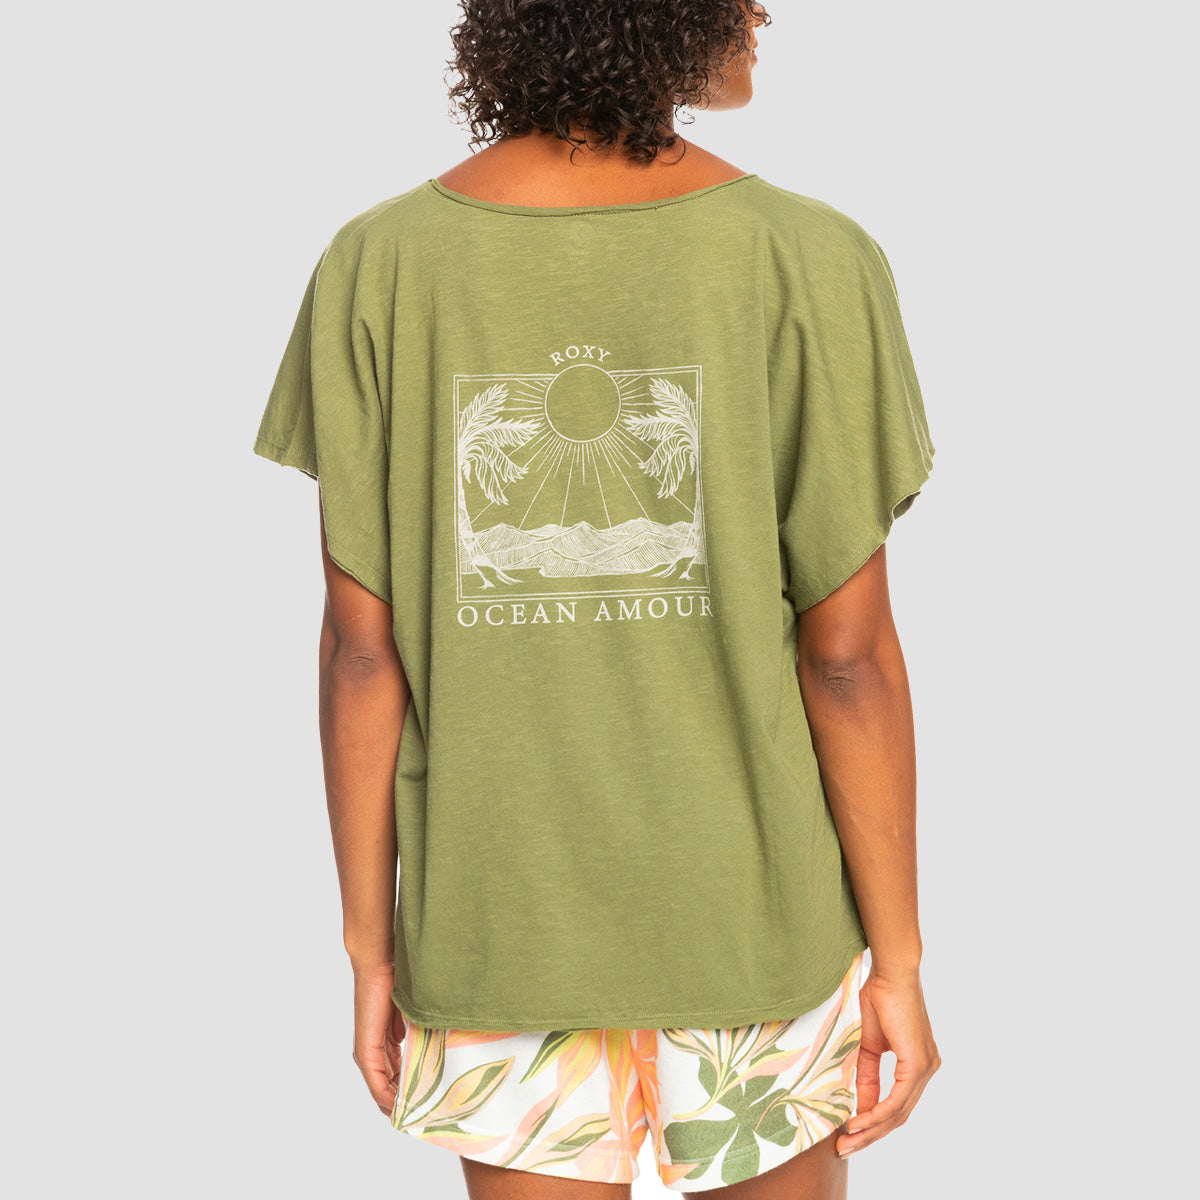 Loden T-Shirt Green - Womens Twilight Roxy